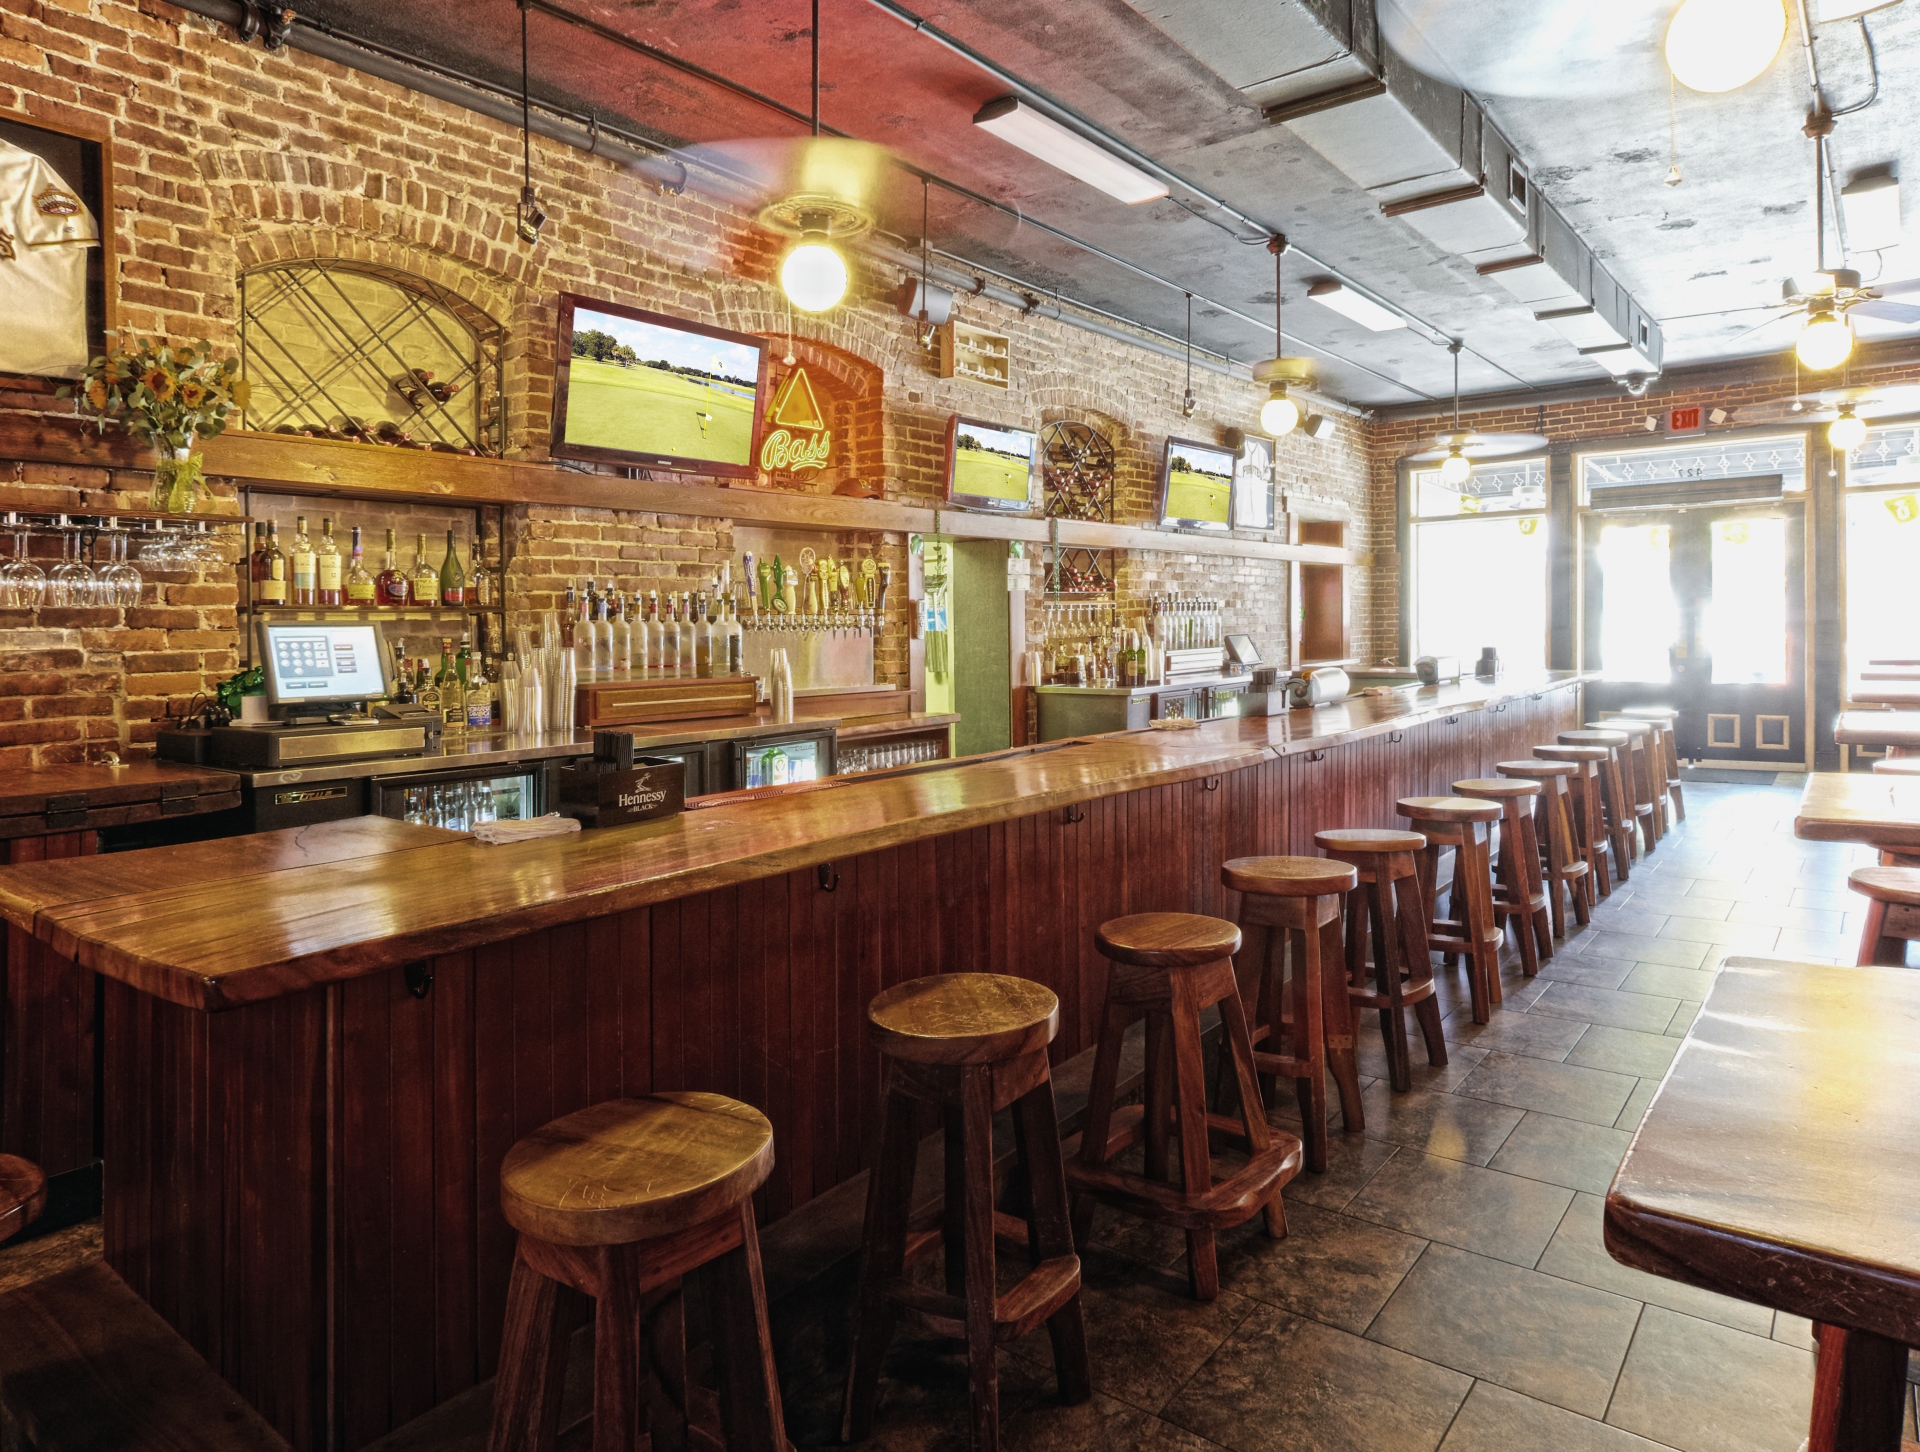 Seguros para bares: ¿Cómo proteger mi negocio y mis clientes?